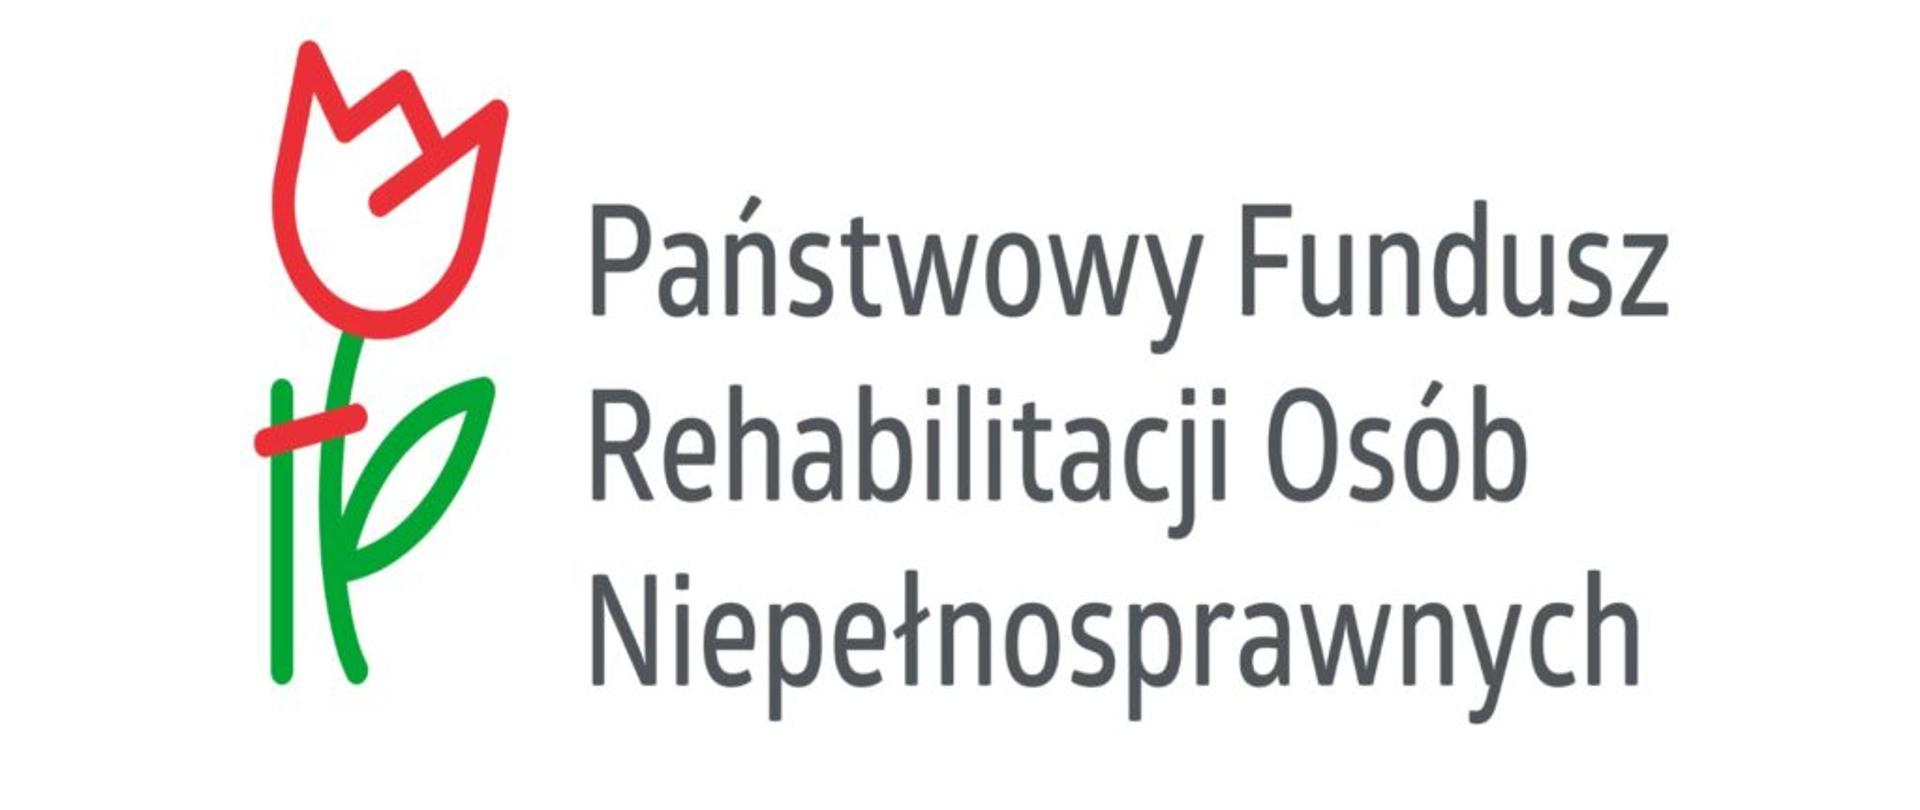 białe tło szare litery Państwowy Fundusz Rehabilitacji Osób Niepełnosprawnych z boki z lewej strony grafika przedstawiająca tulipana 